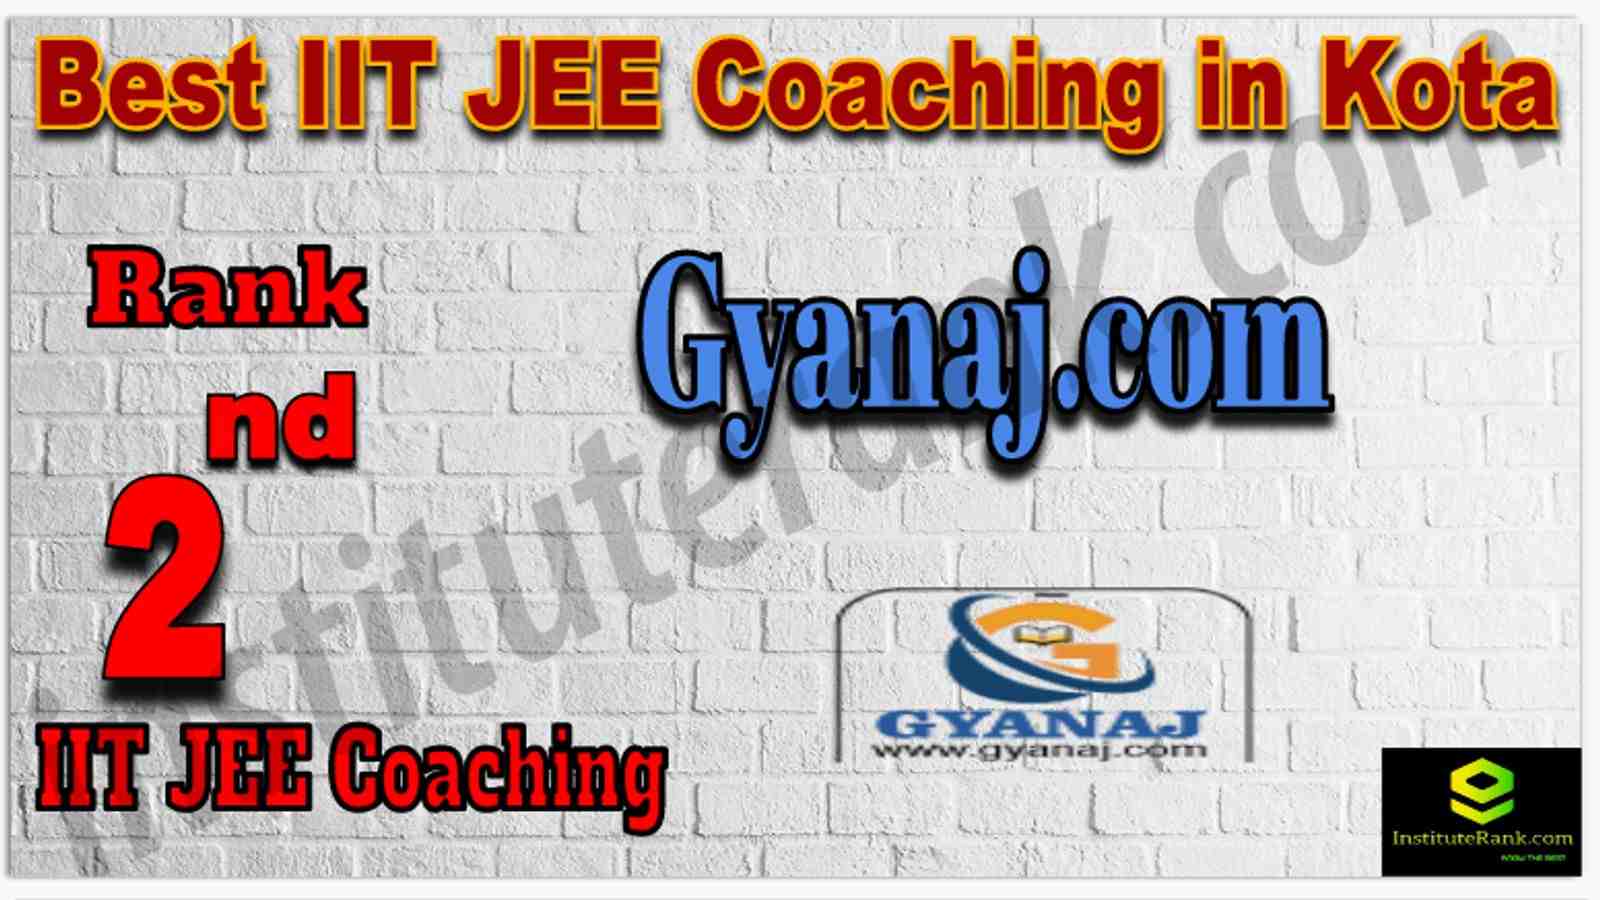 Rank 2nd Best IIT JEE Coaching in Kota